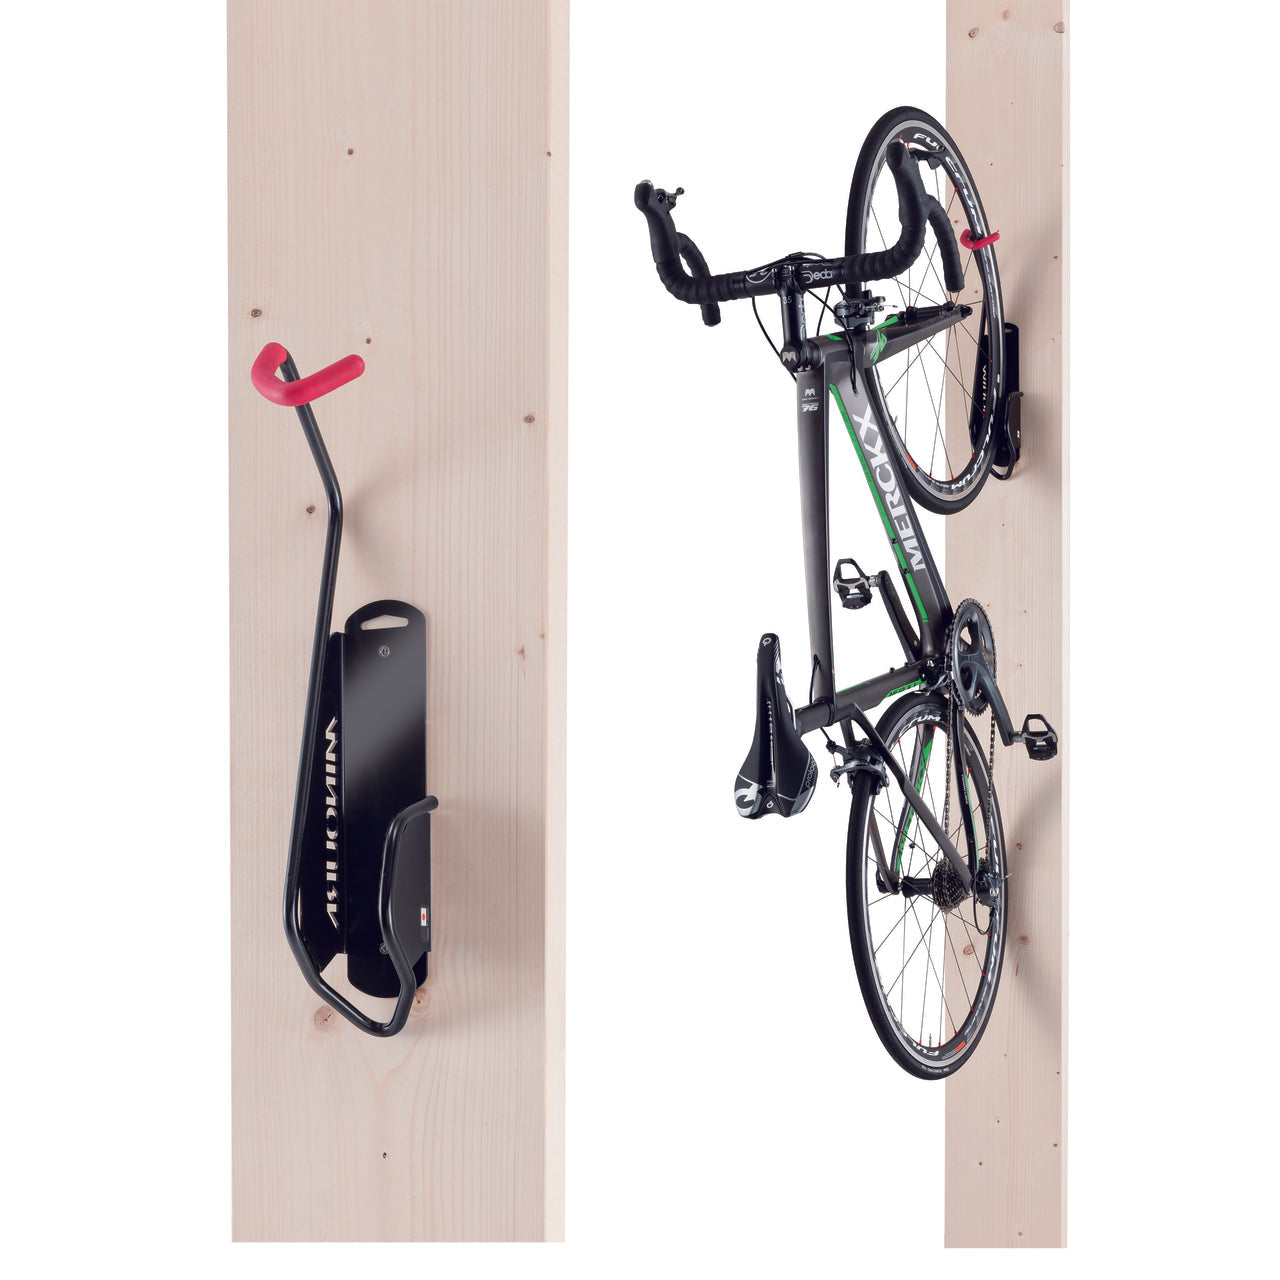 Minoura Bike Hanger V 直掛掛車架 / Minoura Bike Hanger V Display Hanger